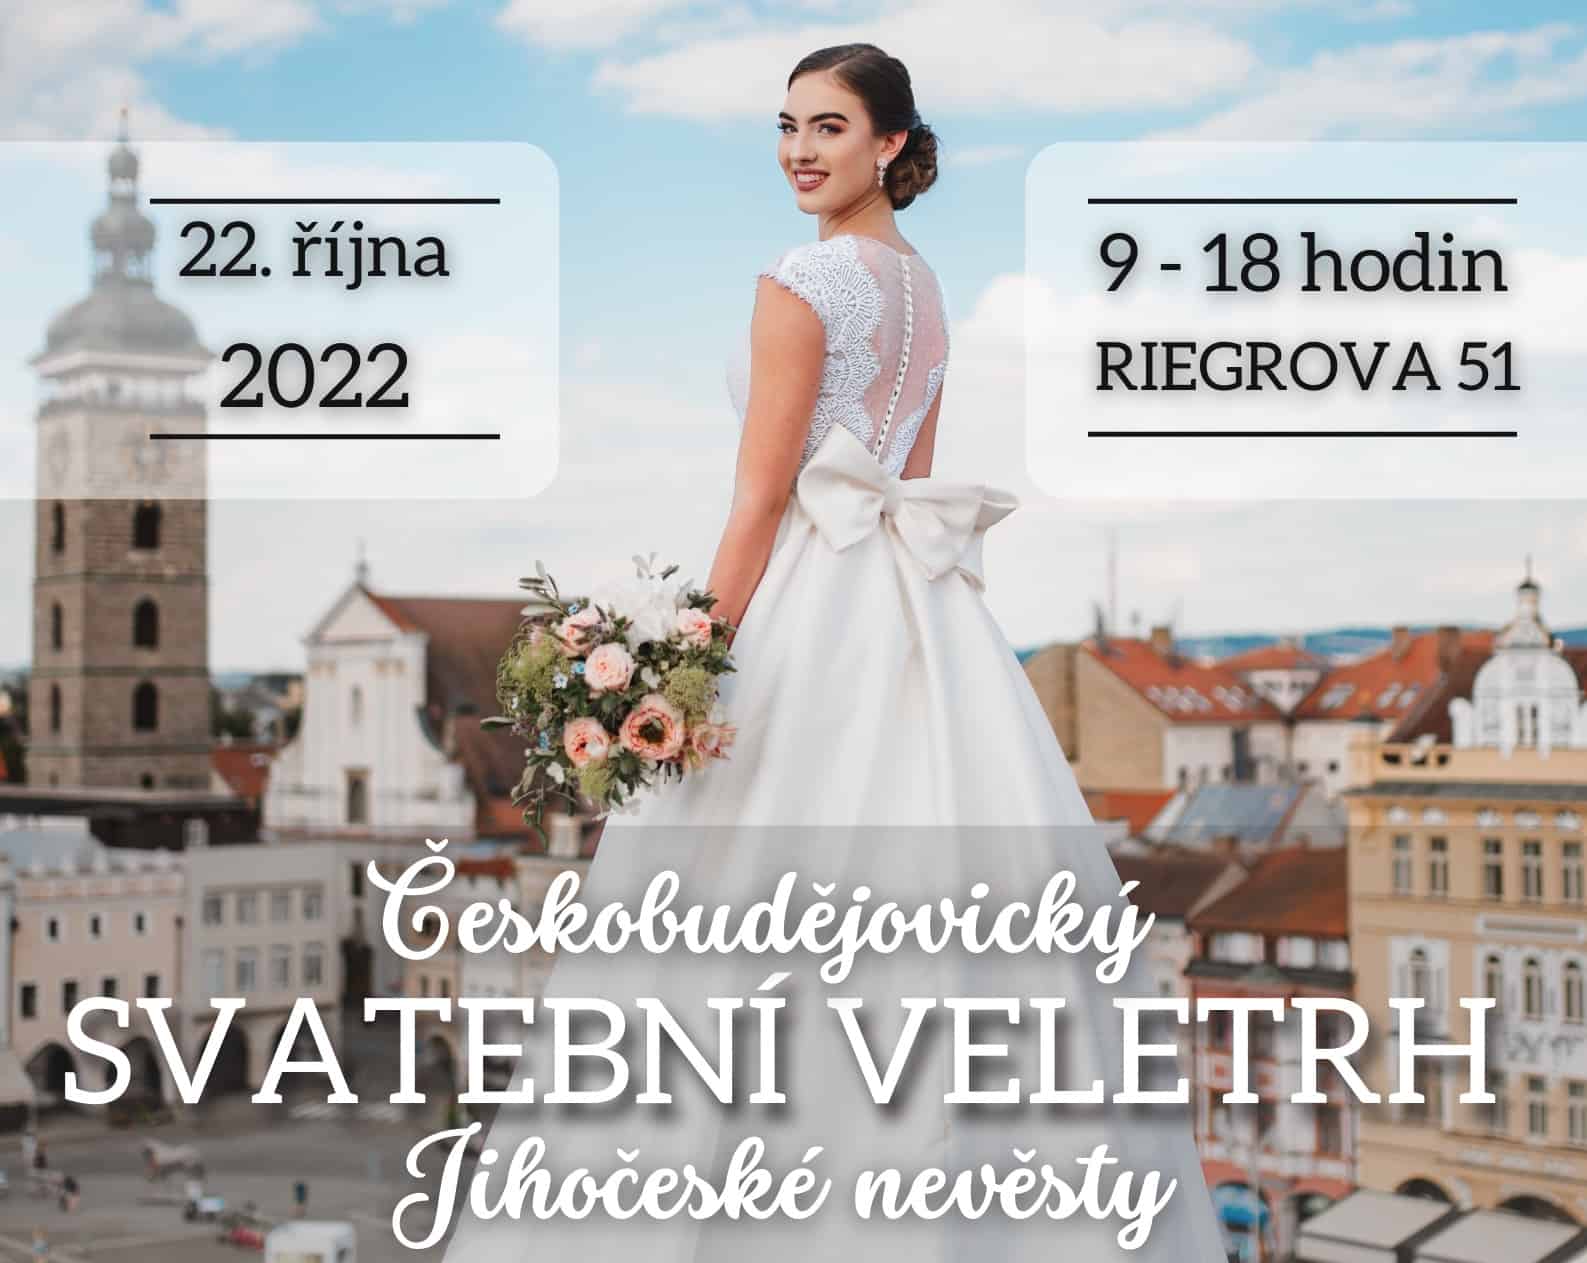 Českobudějovický svatební veletrh 22.10.2022